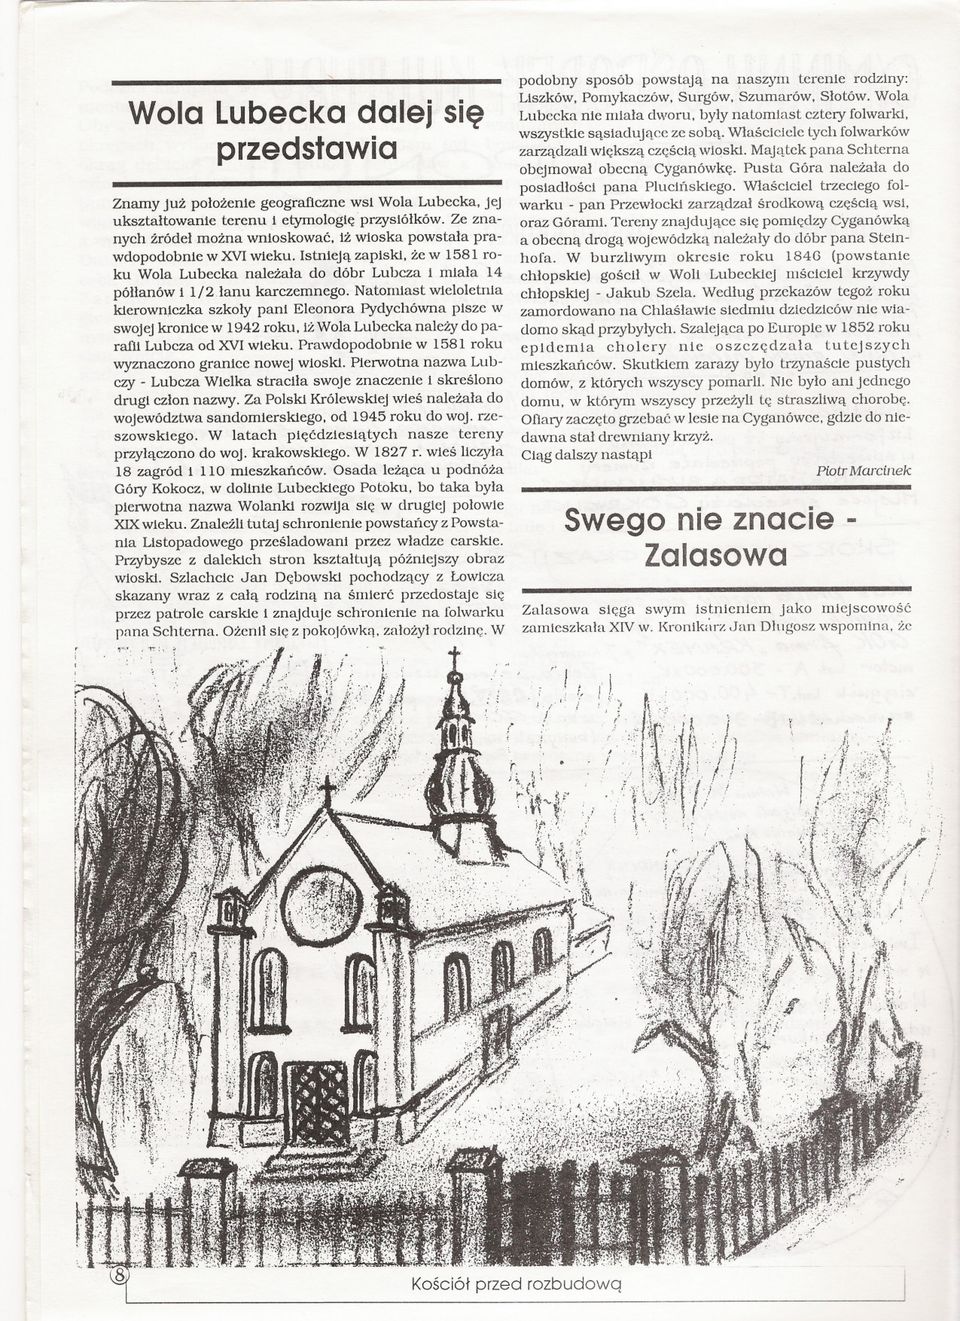 Natomiast wieloletnia kierowniczka szkoly pani Eleonora Pydychówna pisze w swojej kronice w 1942 roku. iz Wola Lubecka nalezy do parafli Lubcza od XVI wieku.